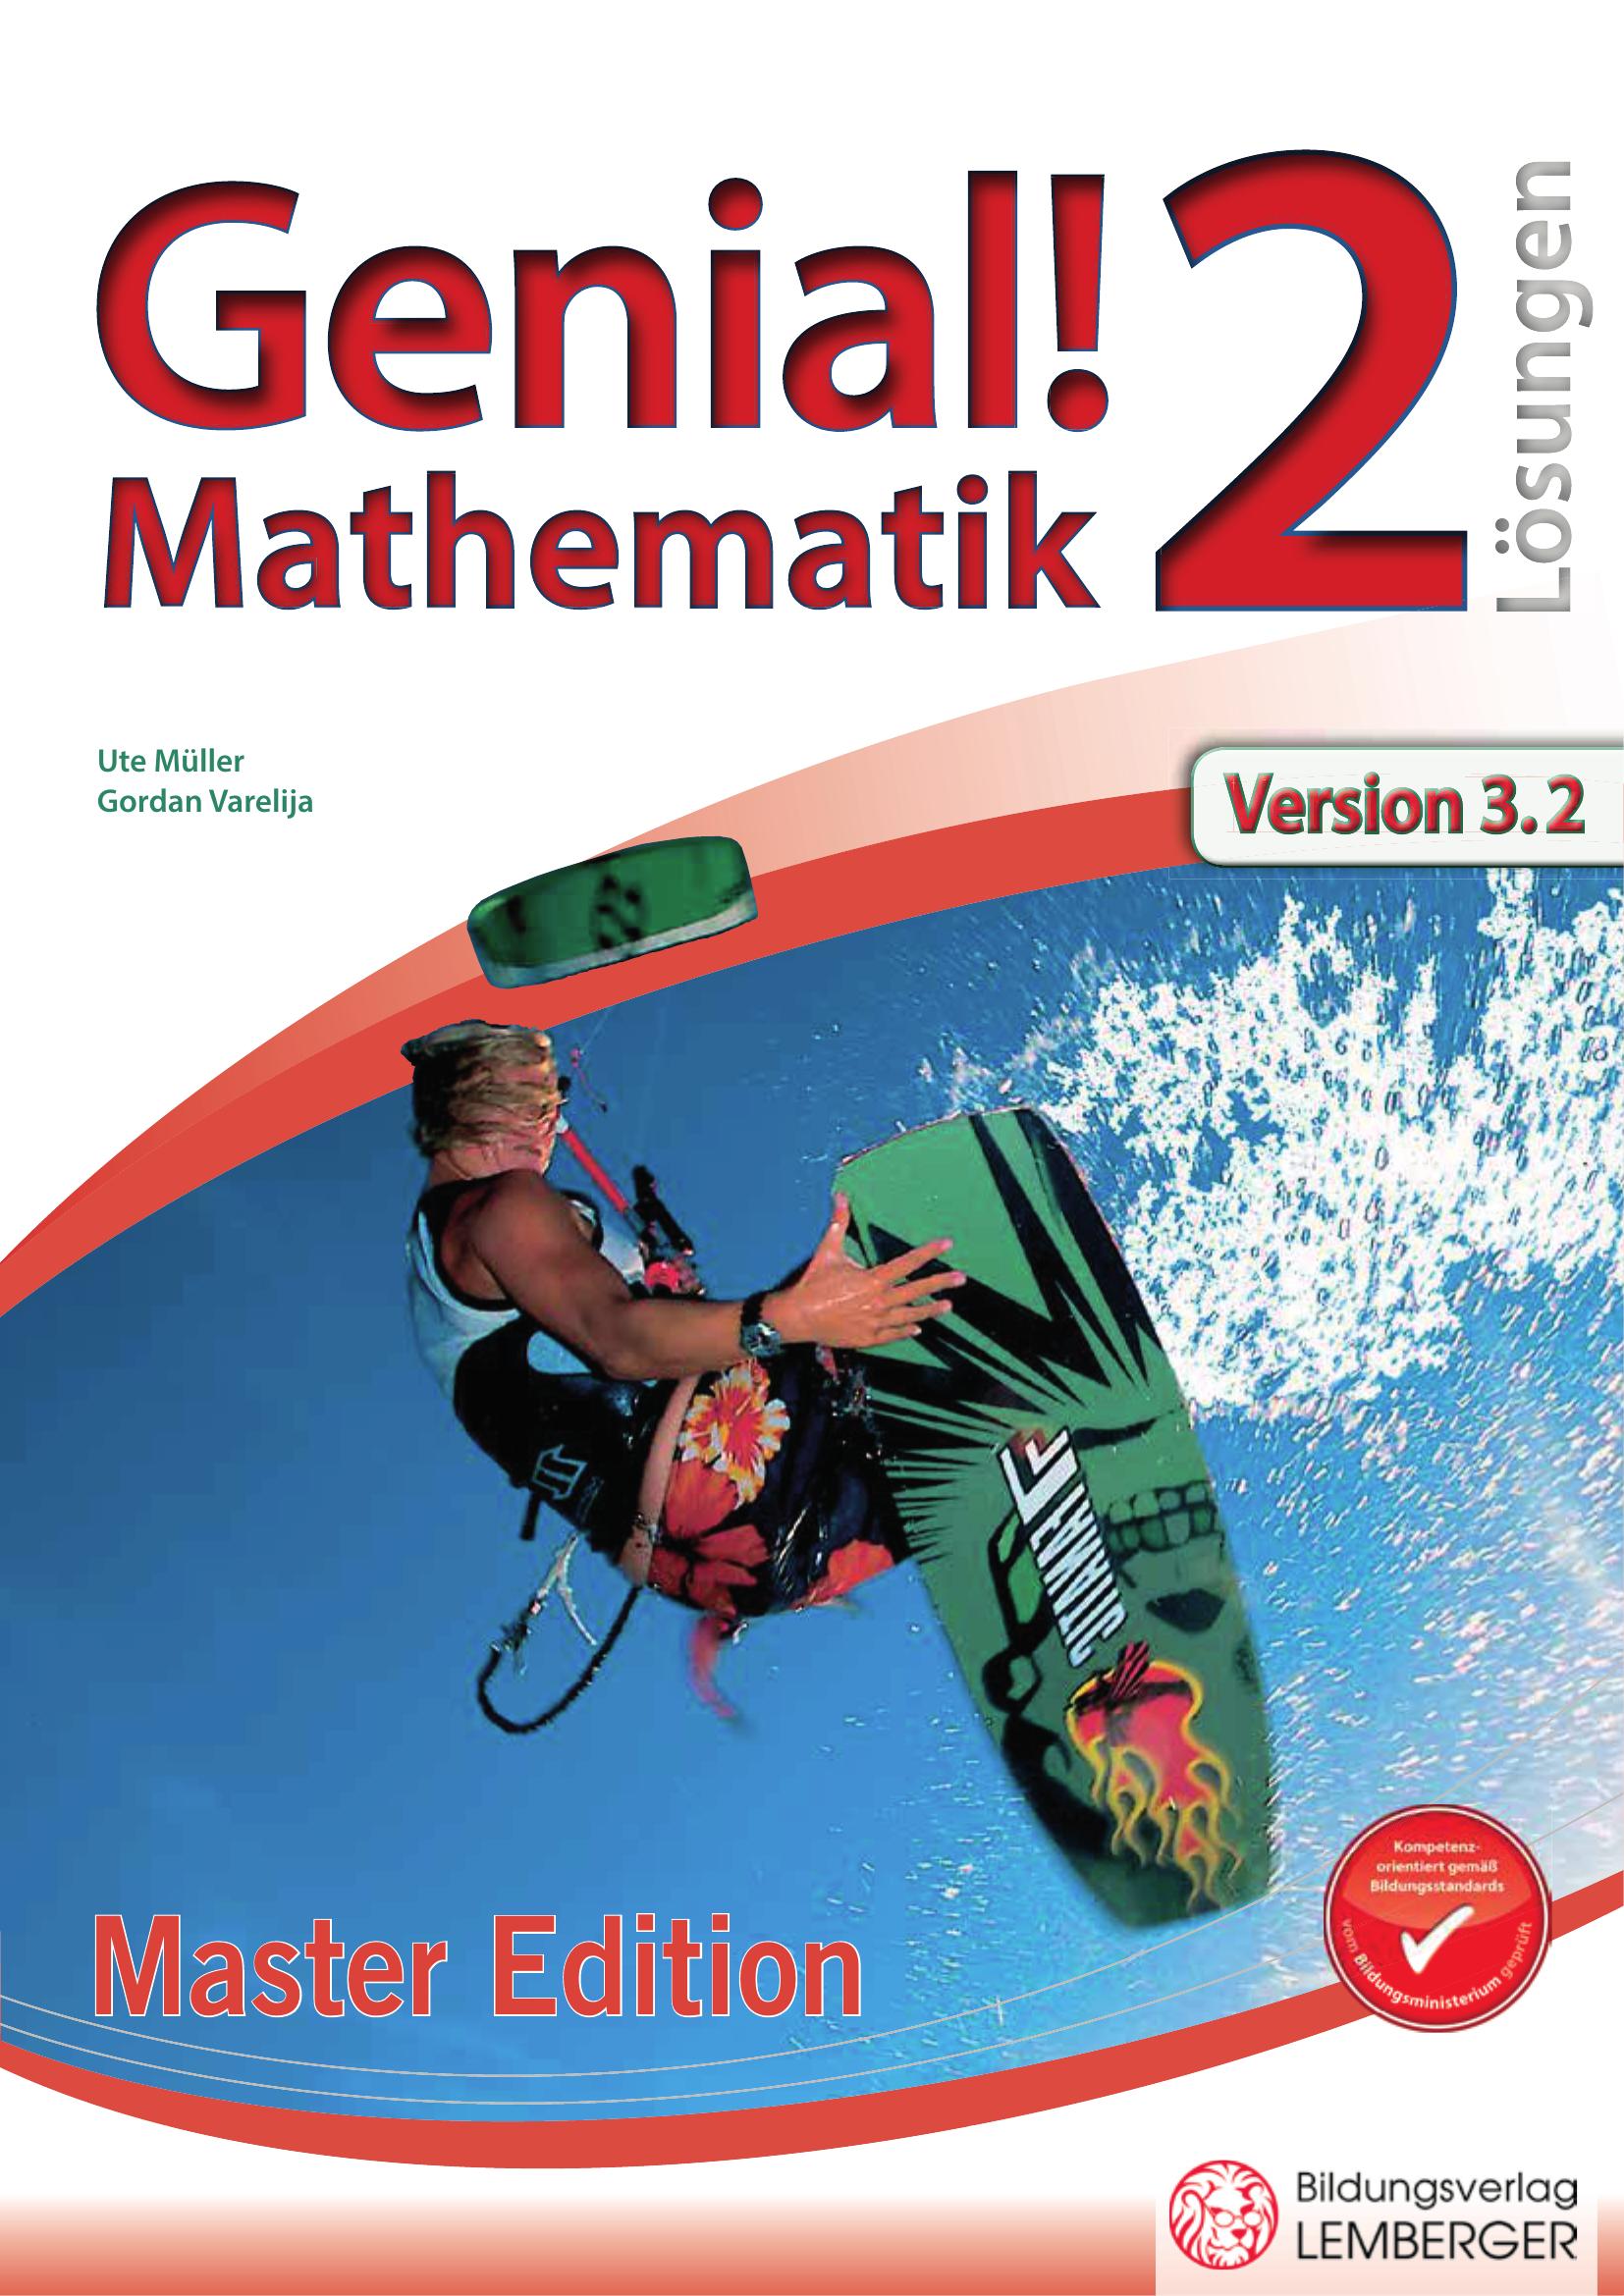 Genial! Mathematik 2 IKT – Übungsteil Master Edition v3.2 – Lösungen